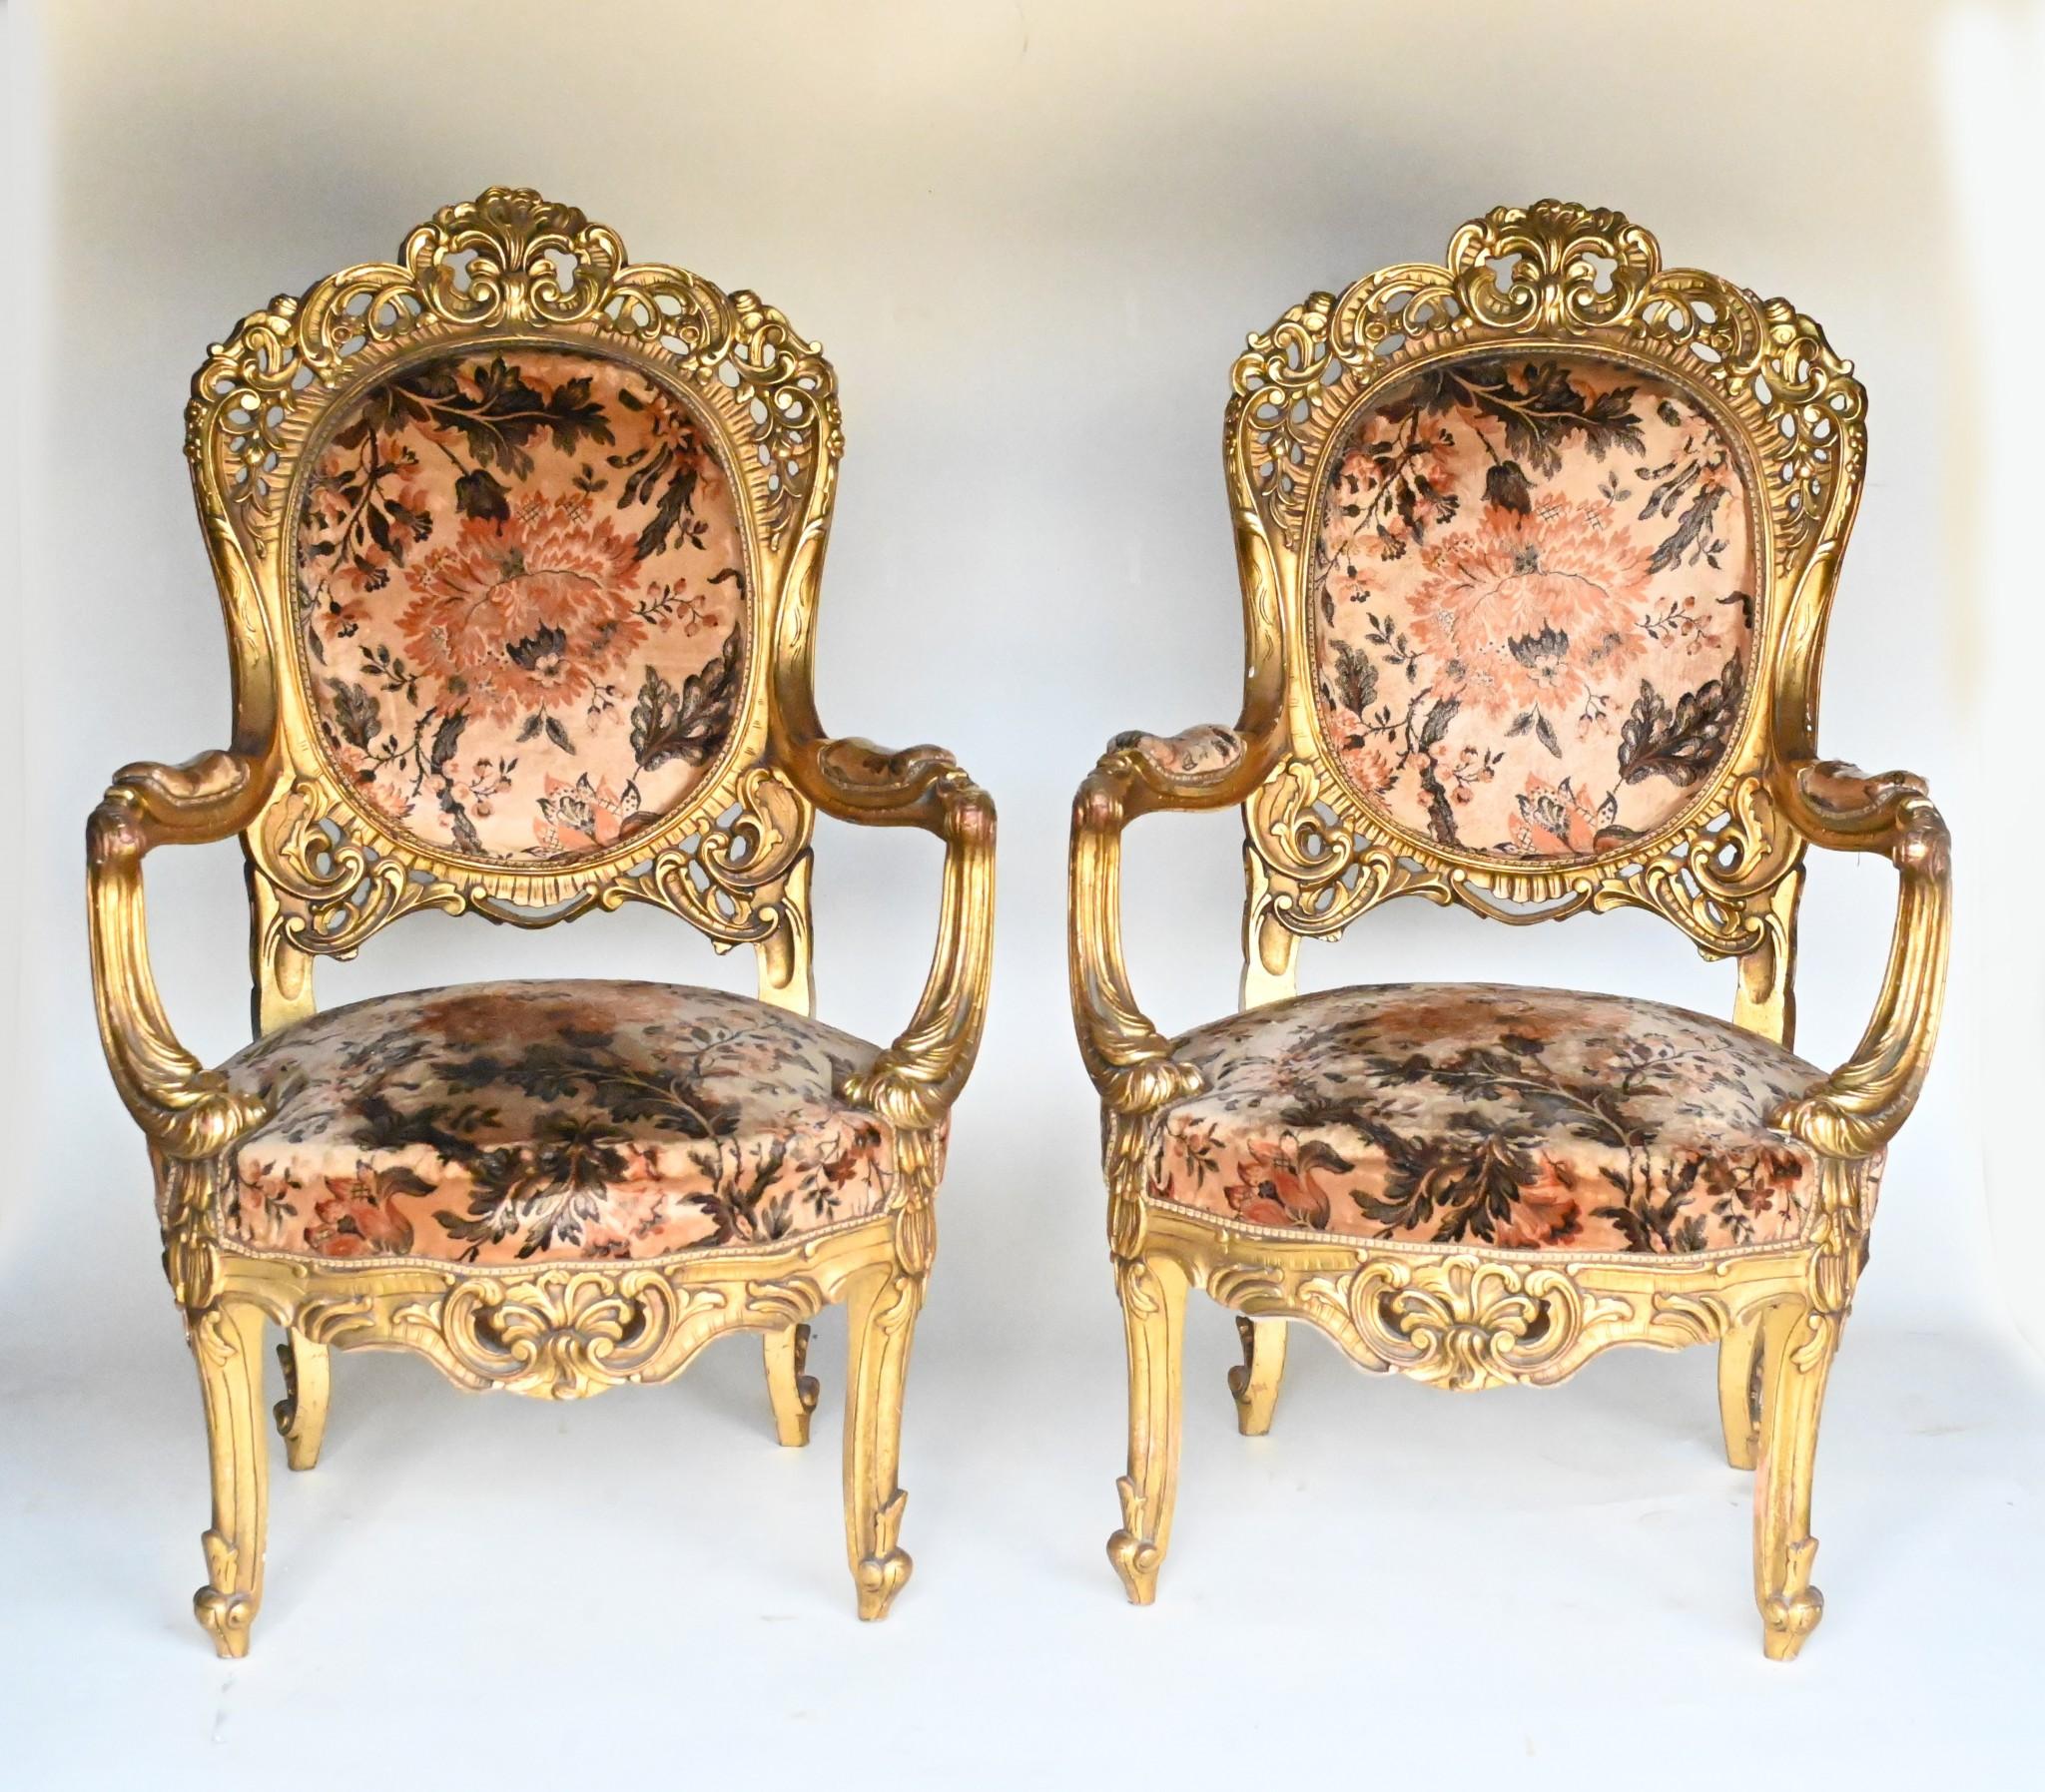 Wunderschönes Paar französischer vergoldeter Sessel
Perfekte Salonstühle im Jugendstil mit floralen Motiven und einem fließenden Stil in der Ästhetik
Sehr bequem mit breiten Armen und gepolsterten Sitzen und Rückenlehnen
Neu gepolstert mit